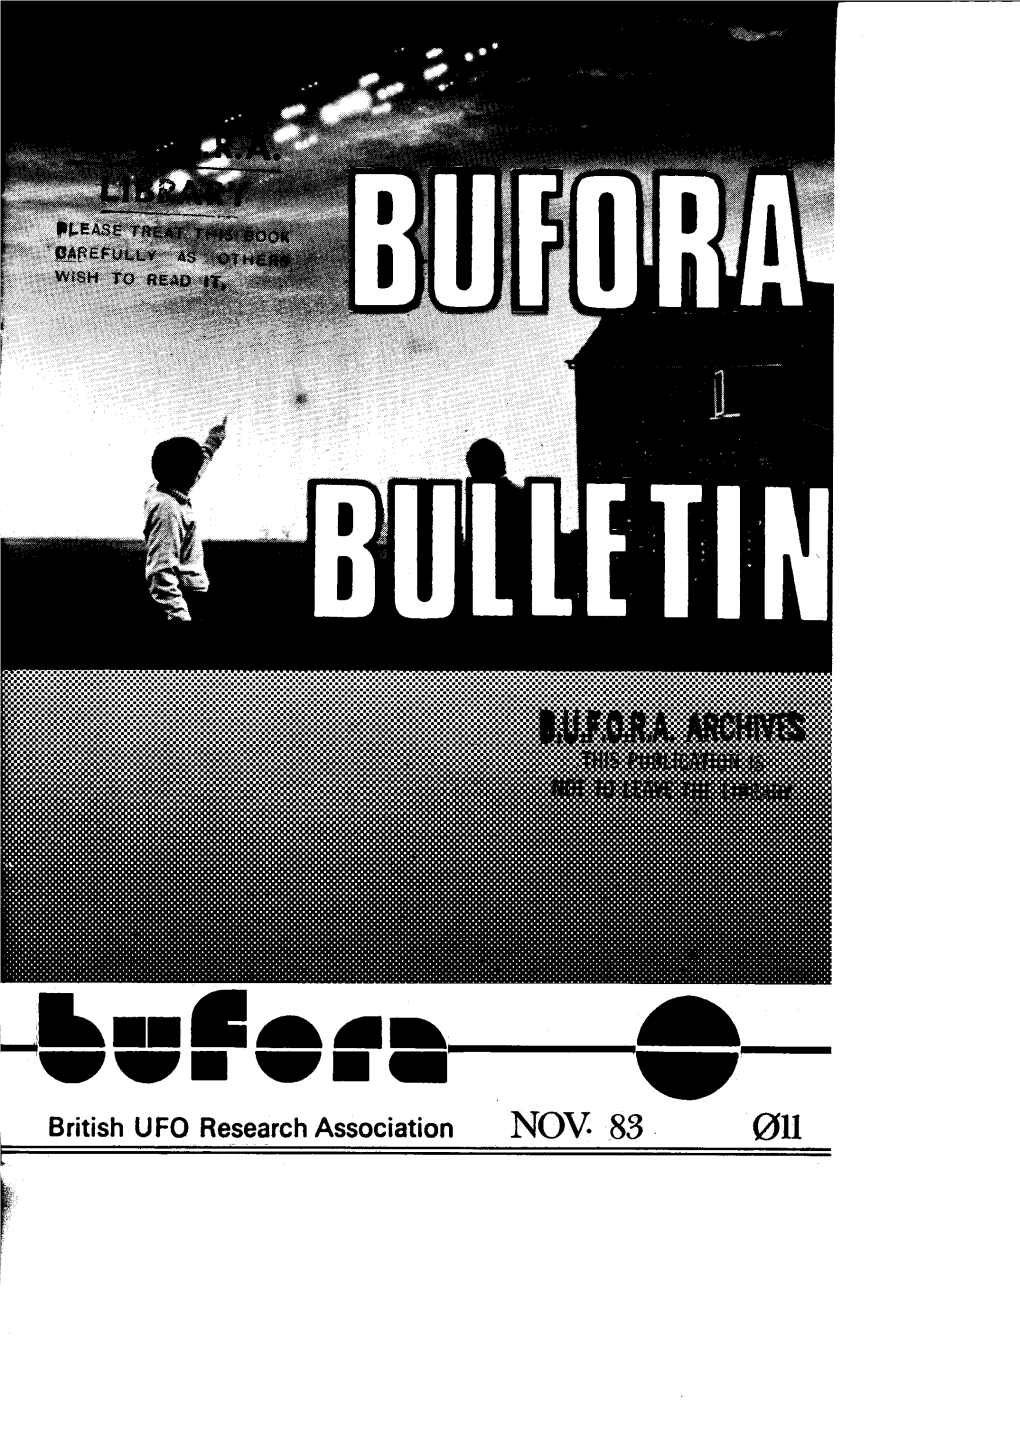 BUFORA Bulletin in November, L98z